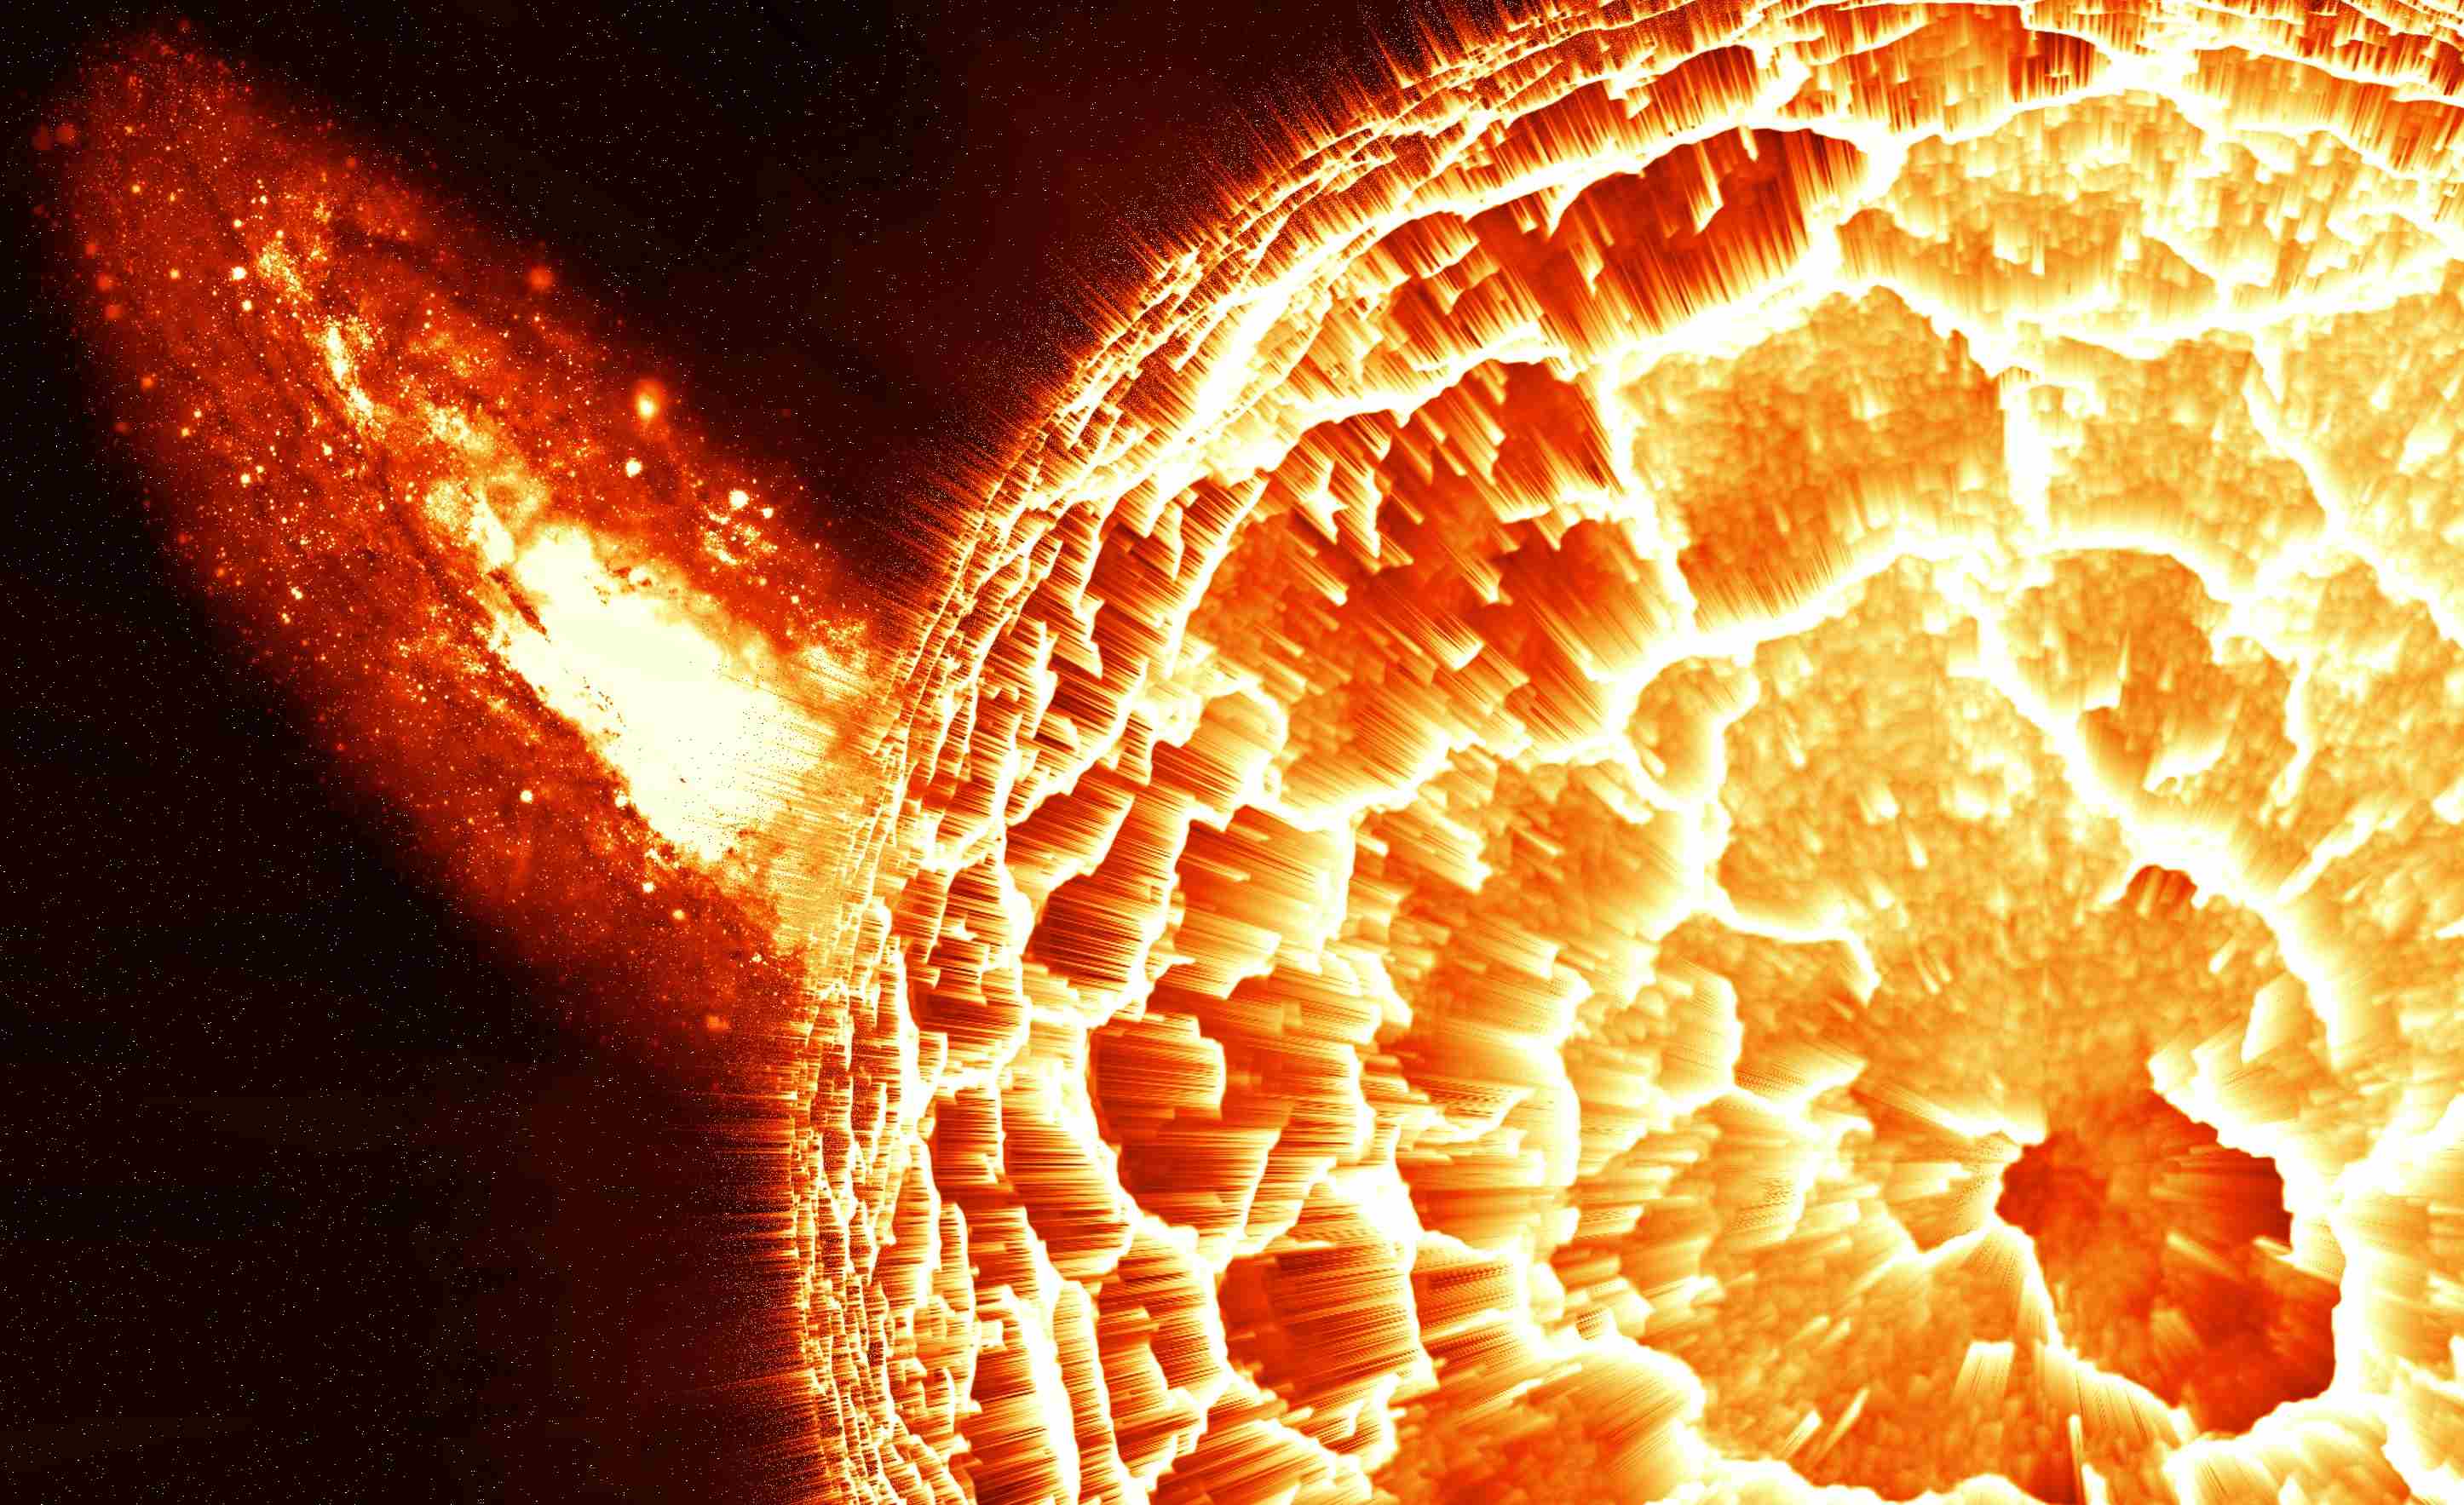 已经出现分裂的科幻太阳图片 震撼壁纸